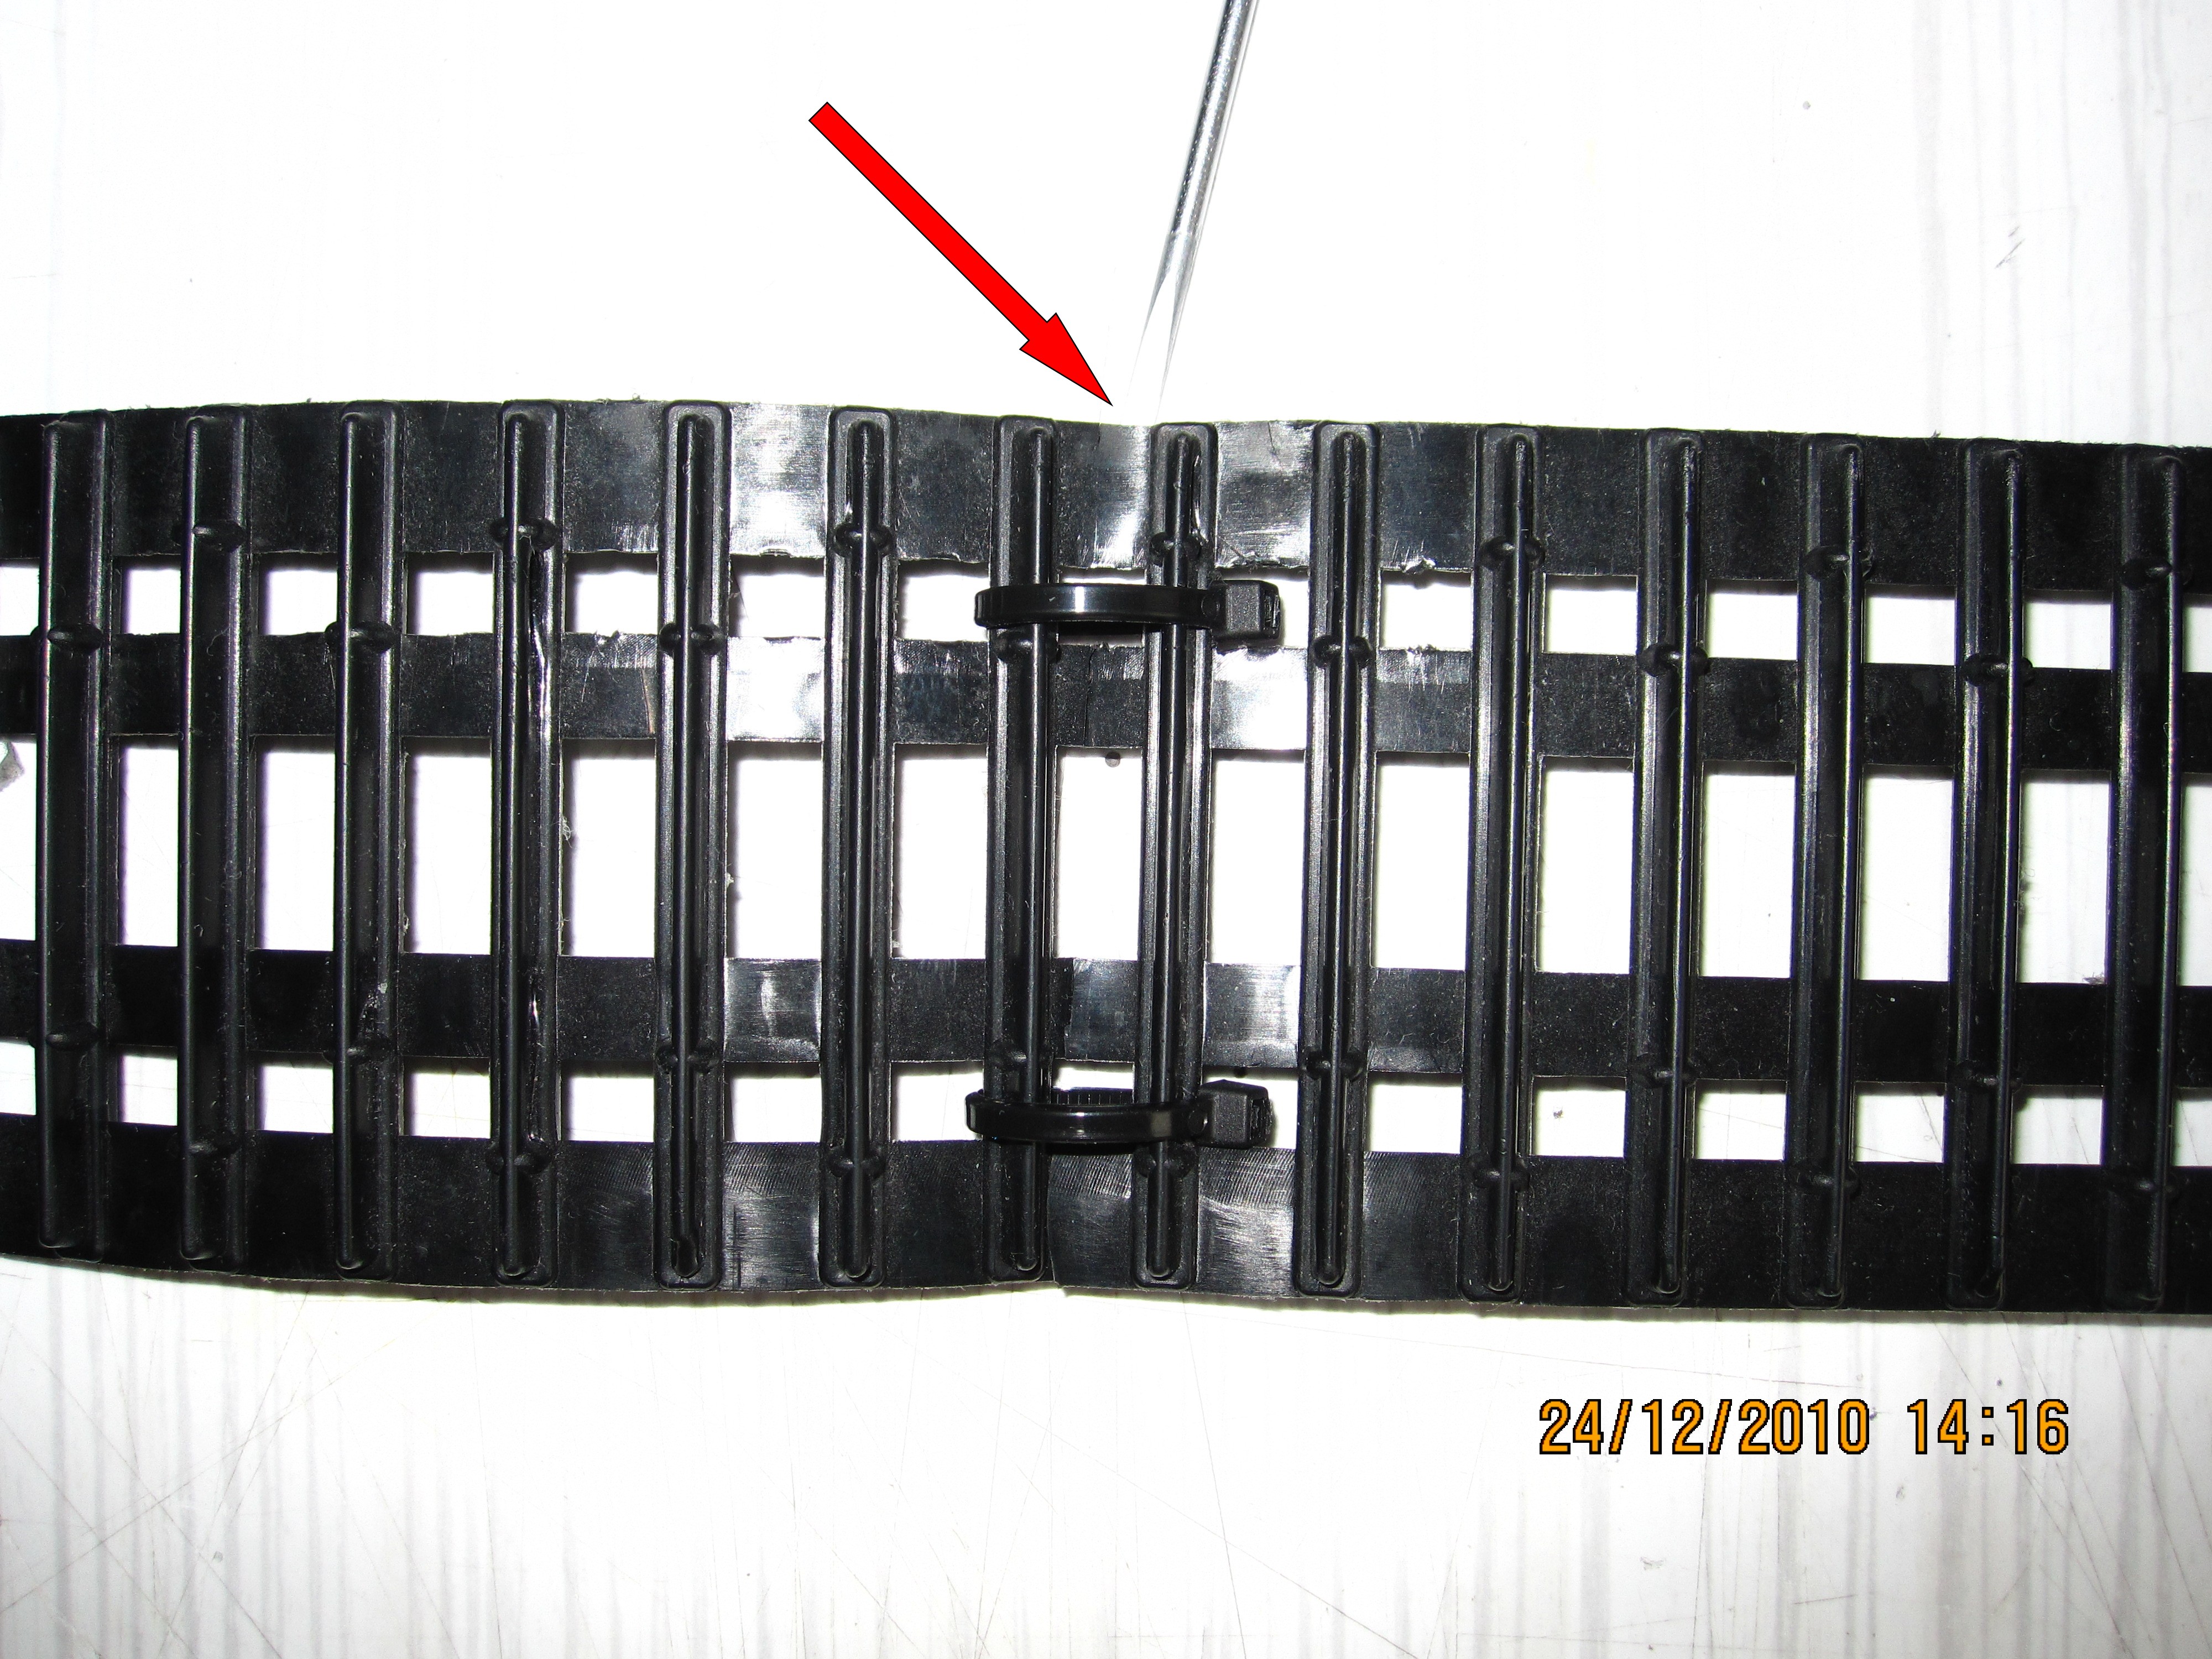 Reparatur von Kettenriss mit Kabelbinder